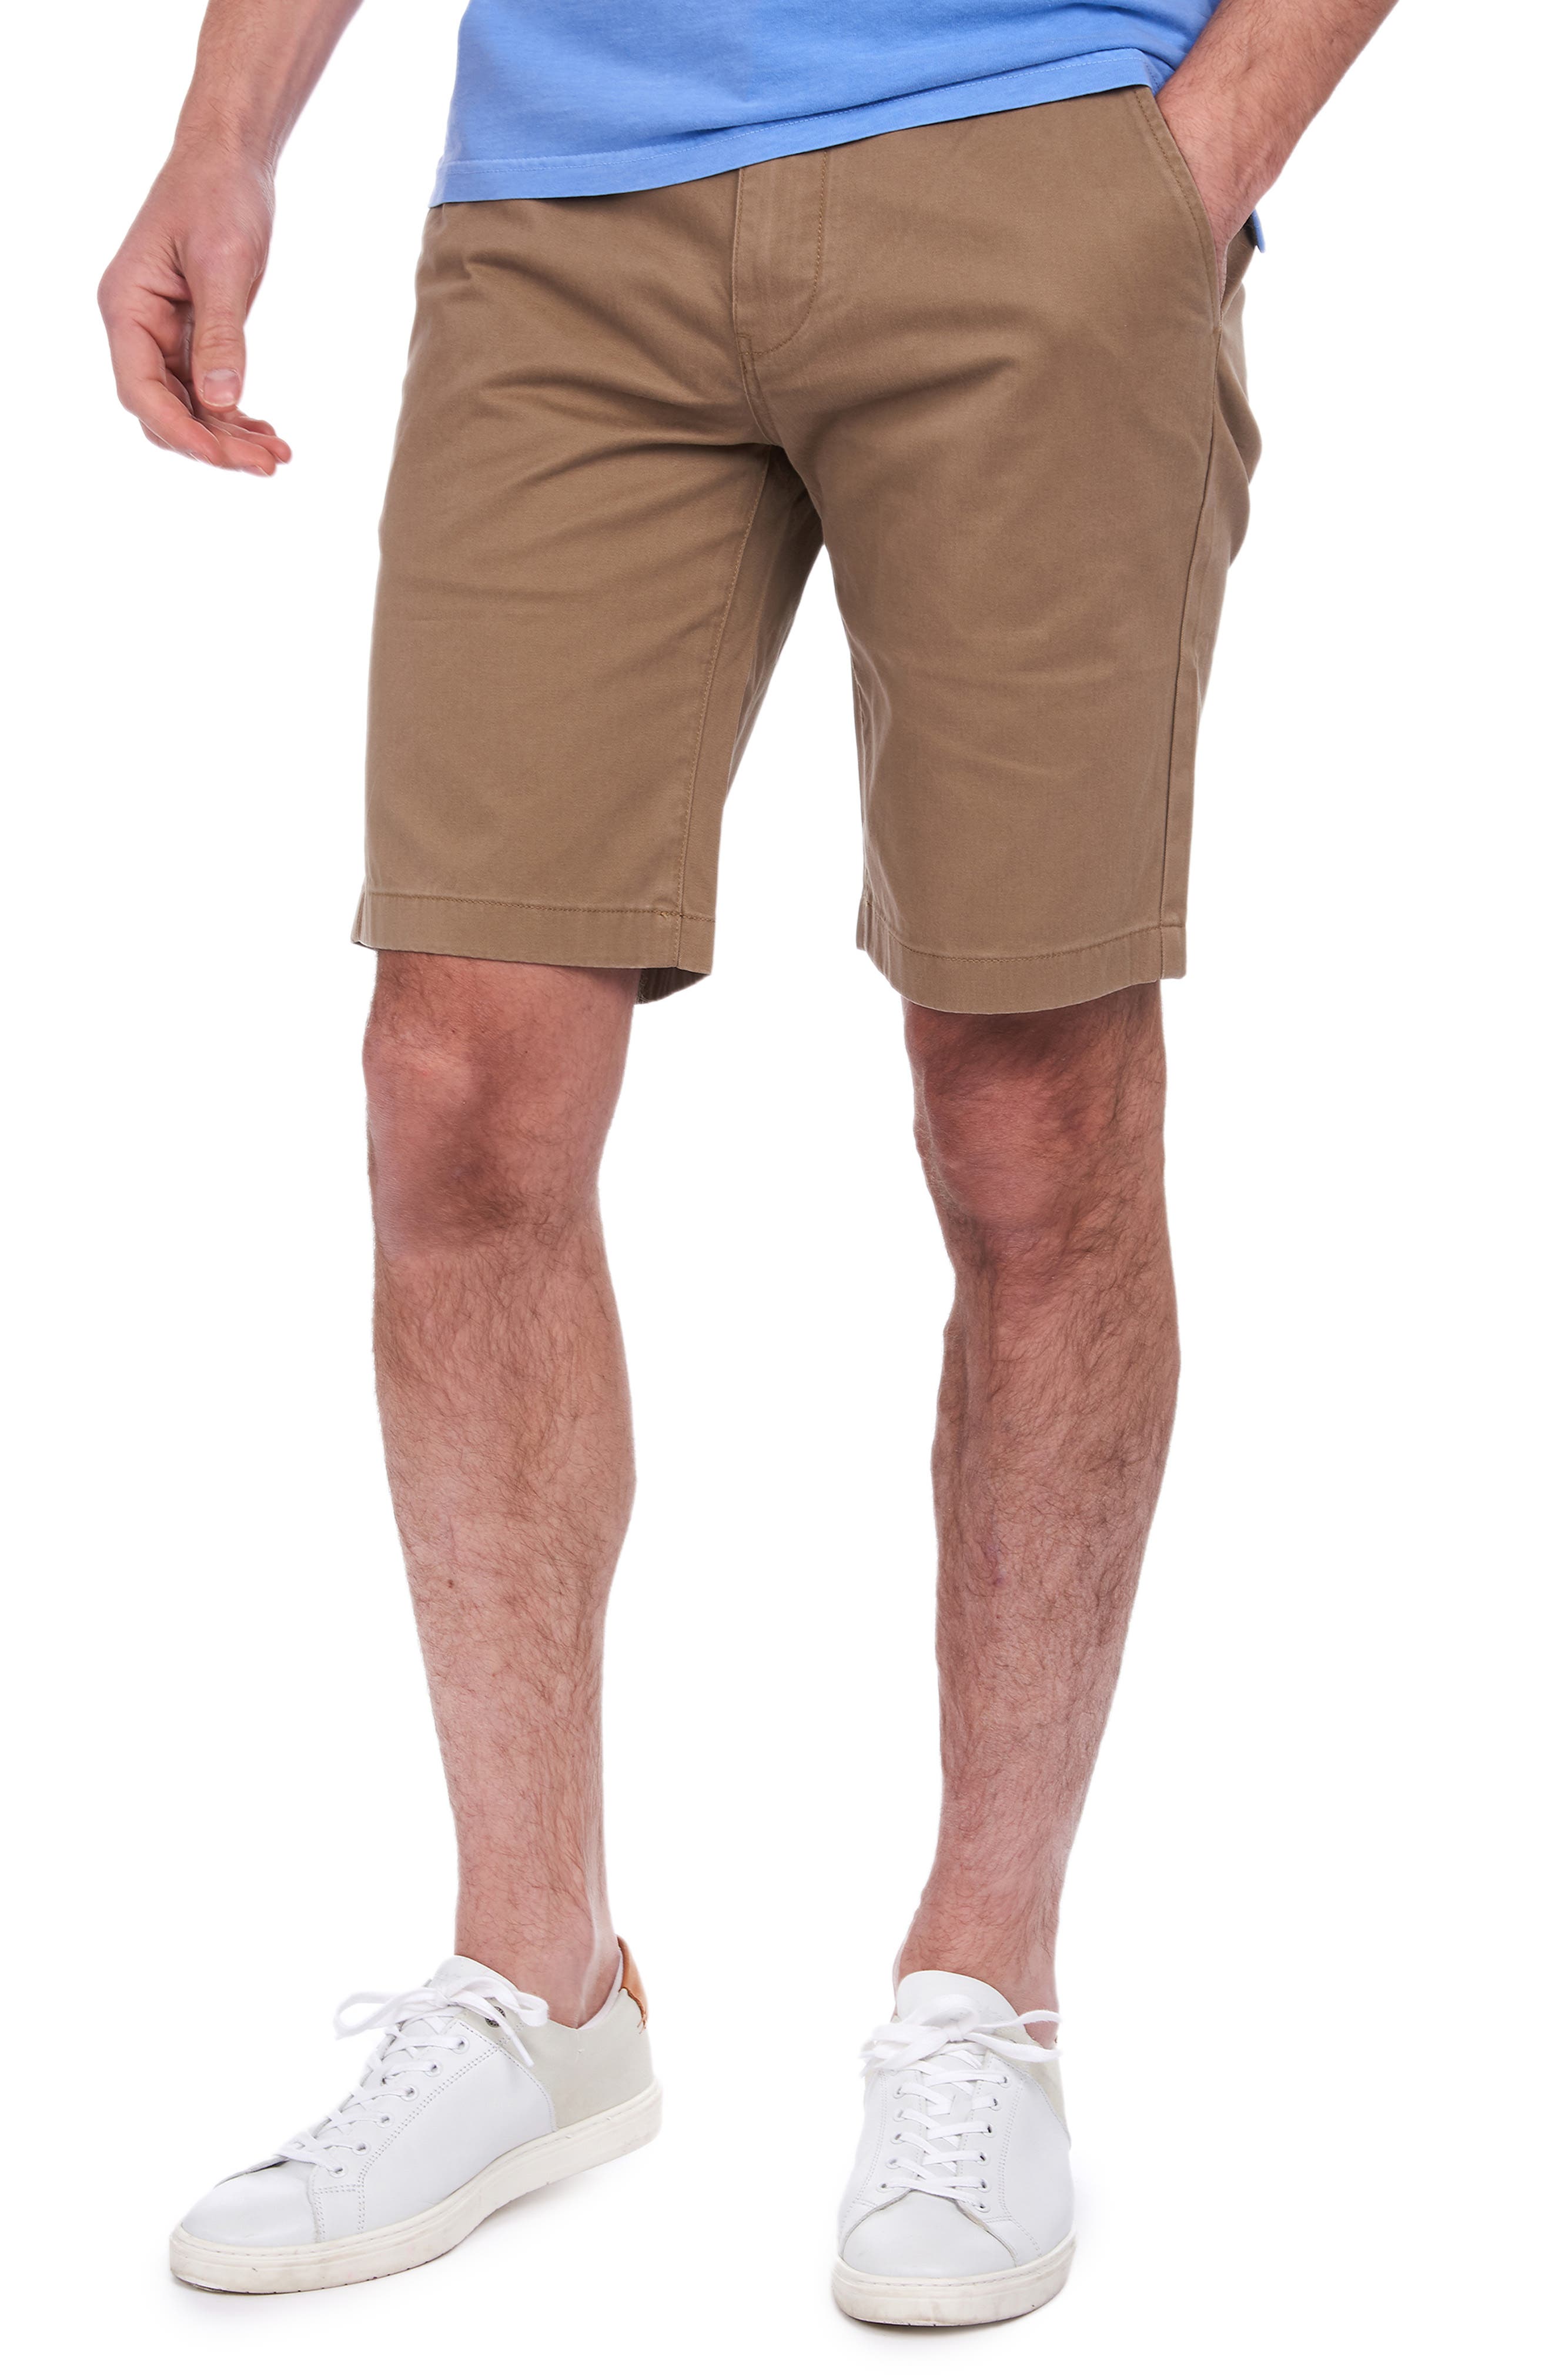 barbour shorts sale